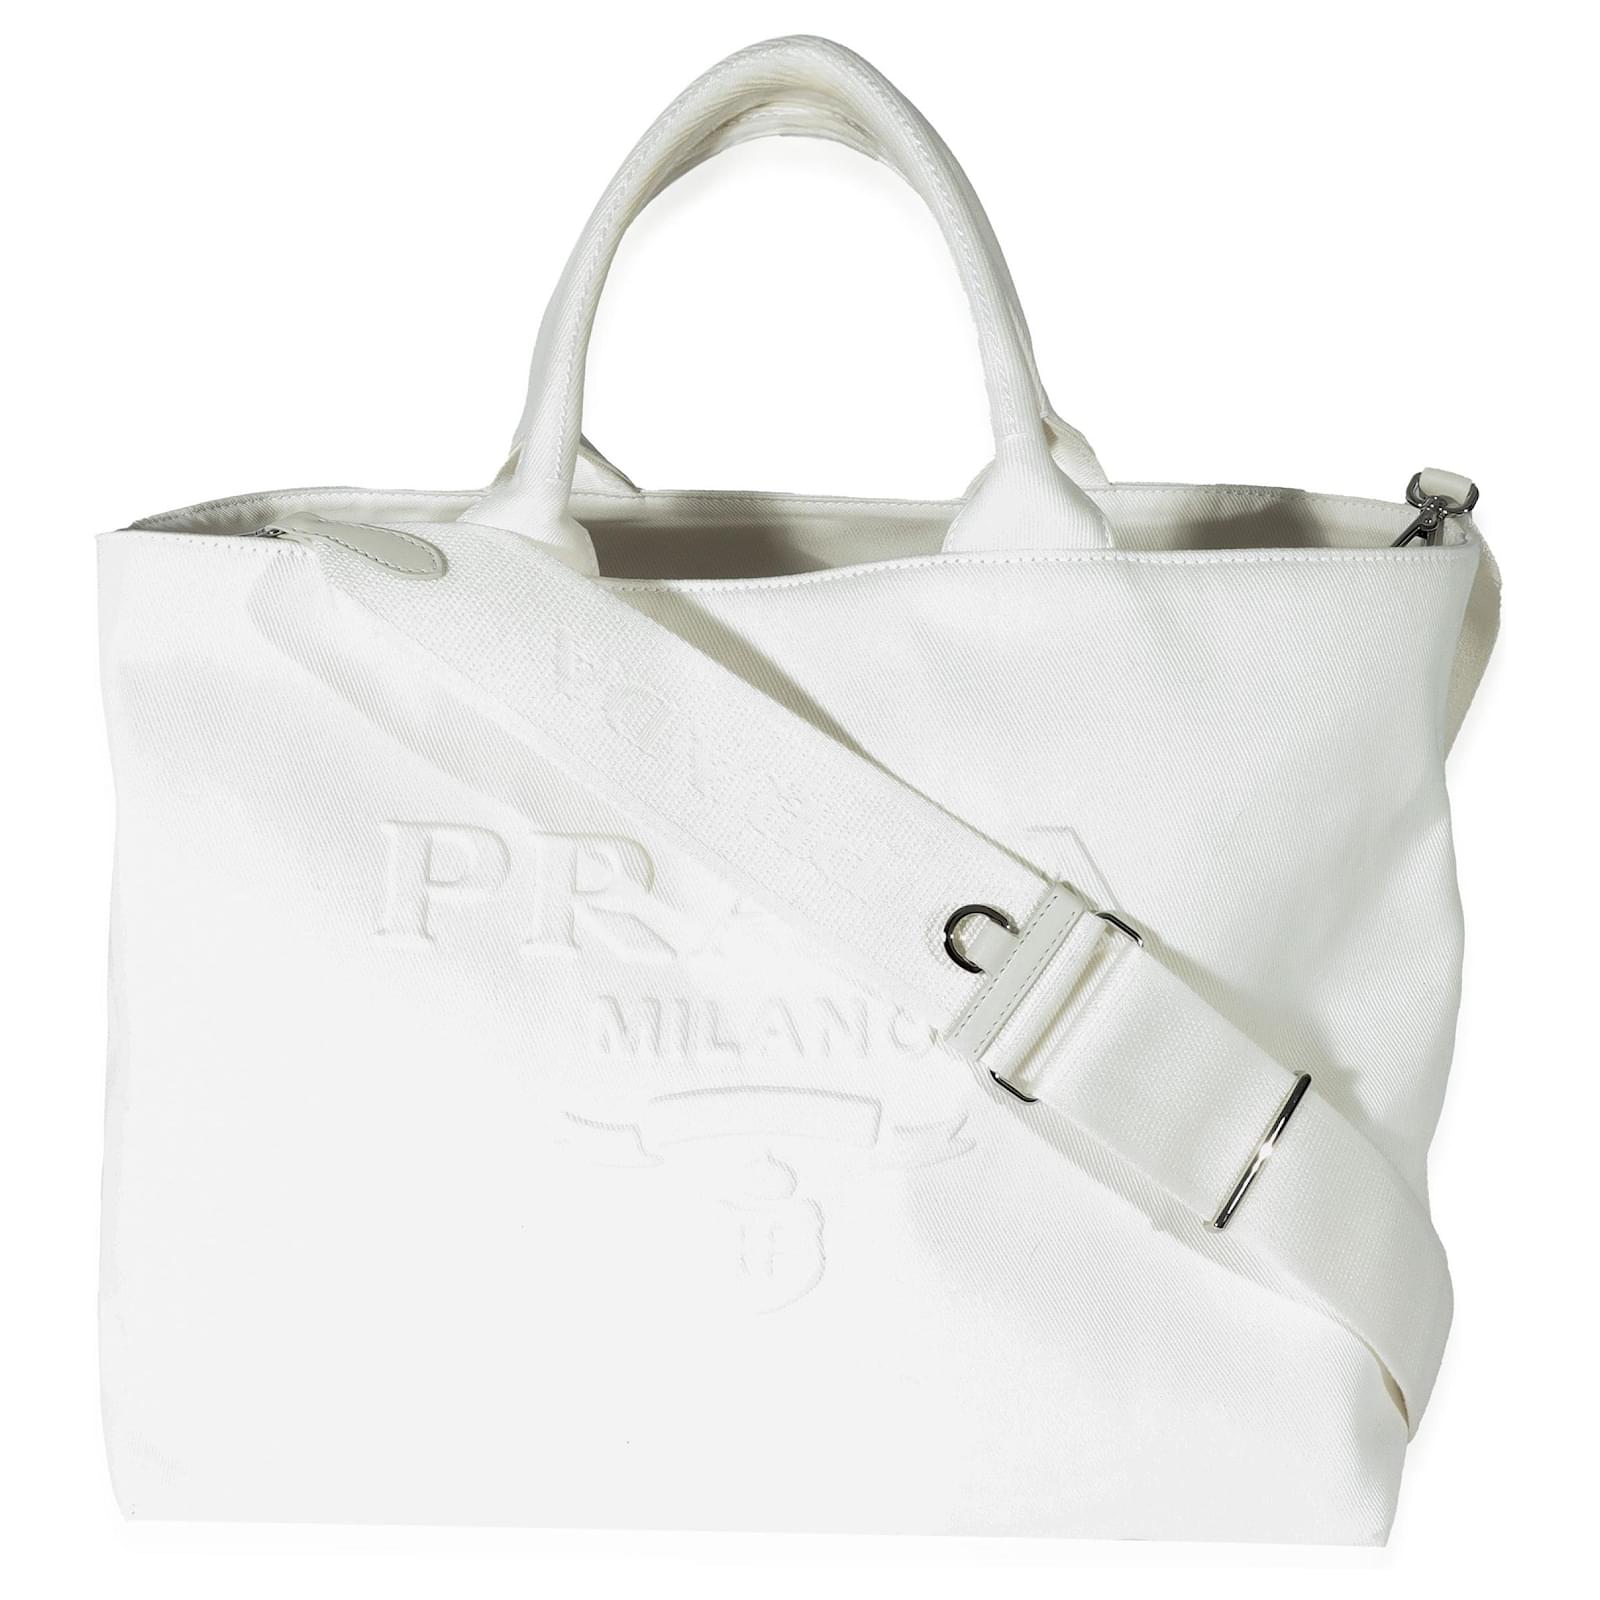 Embossed Leather Top Handle Bag By Prada